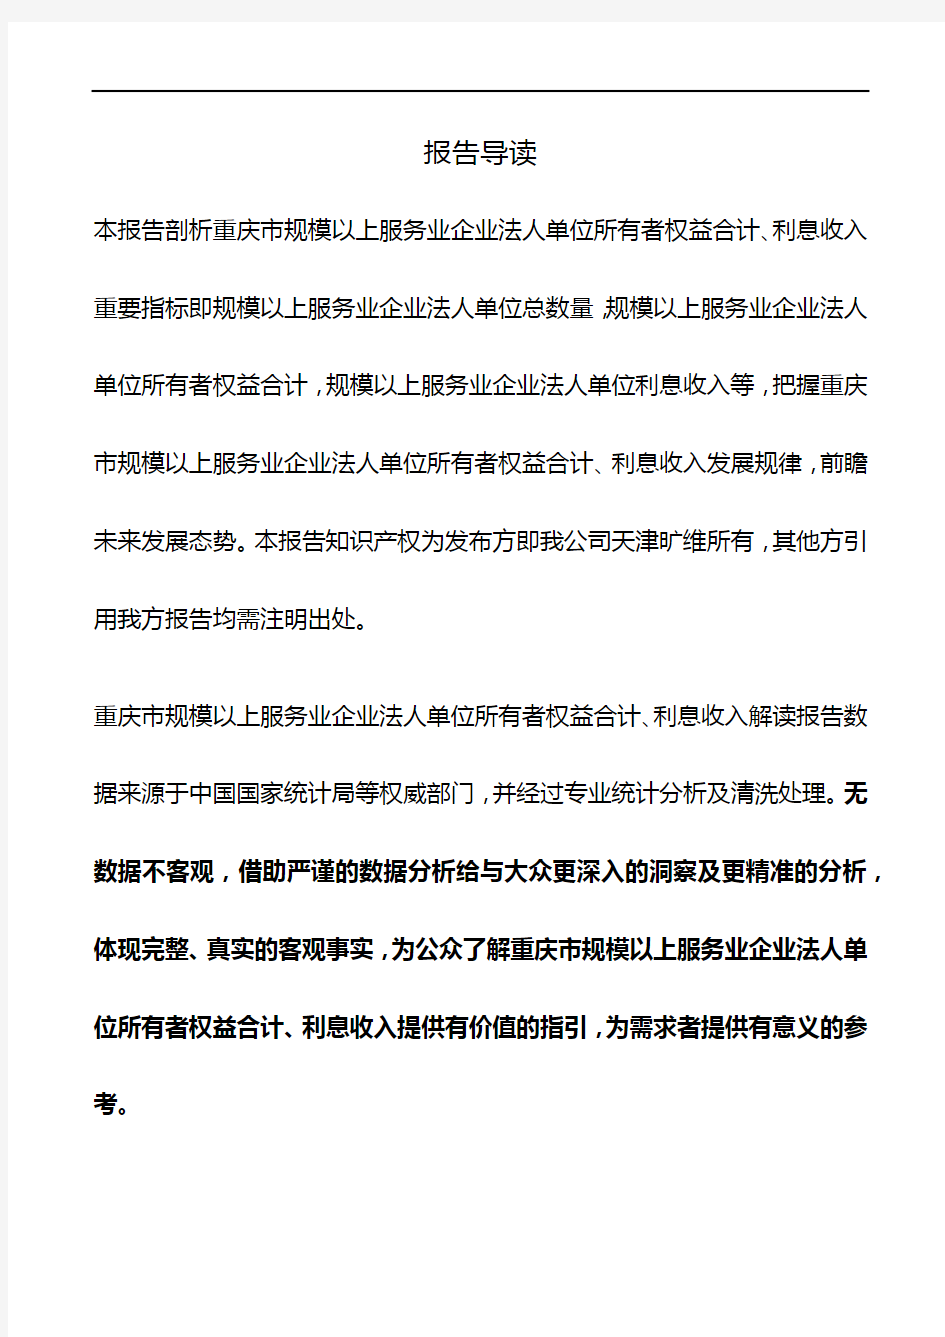 重庆市规模以上服务业企业法人单位所有者权益合计、利息收入3年数据解读报告2019版